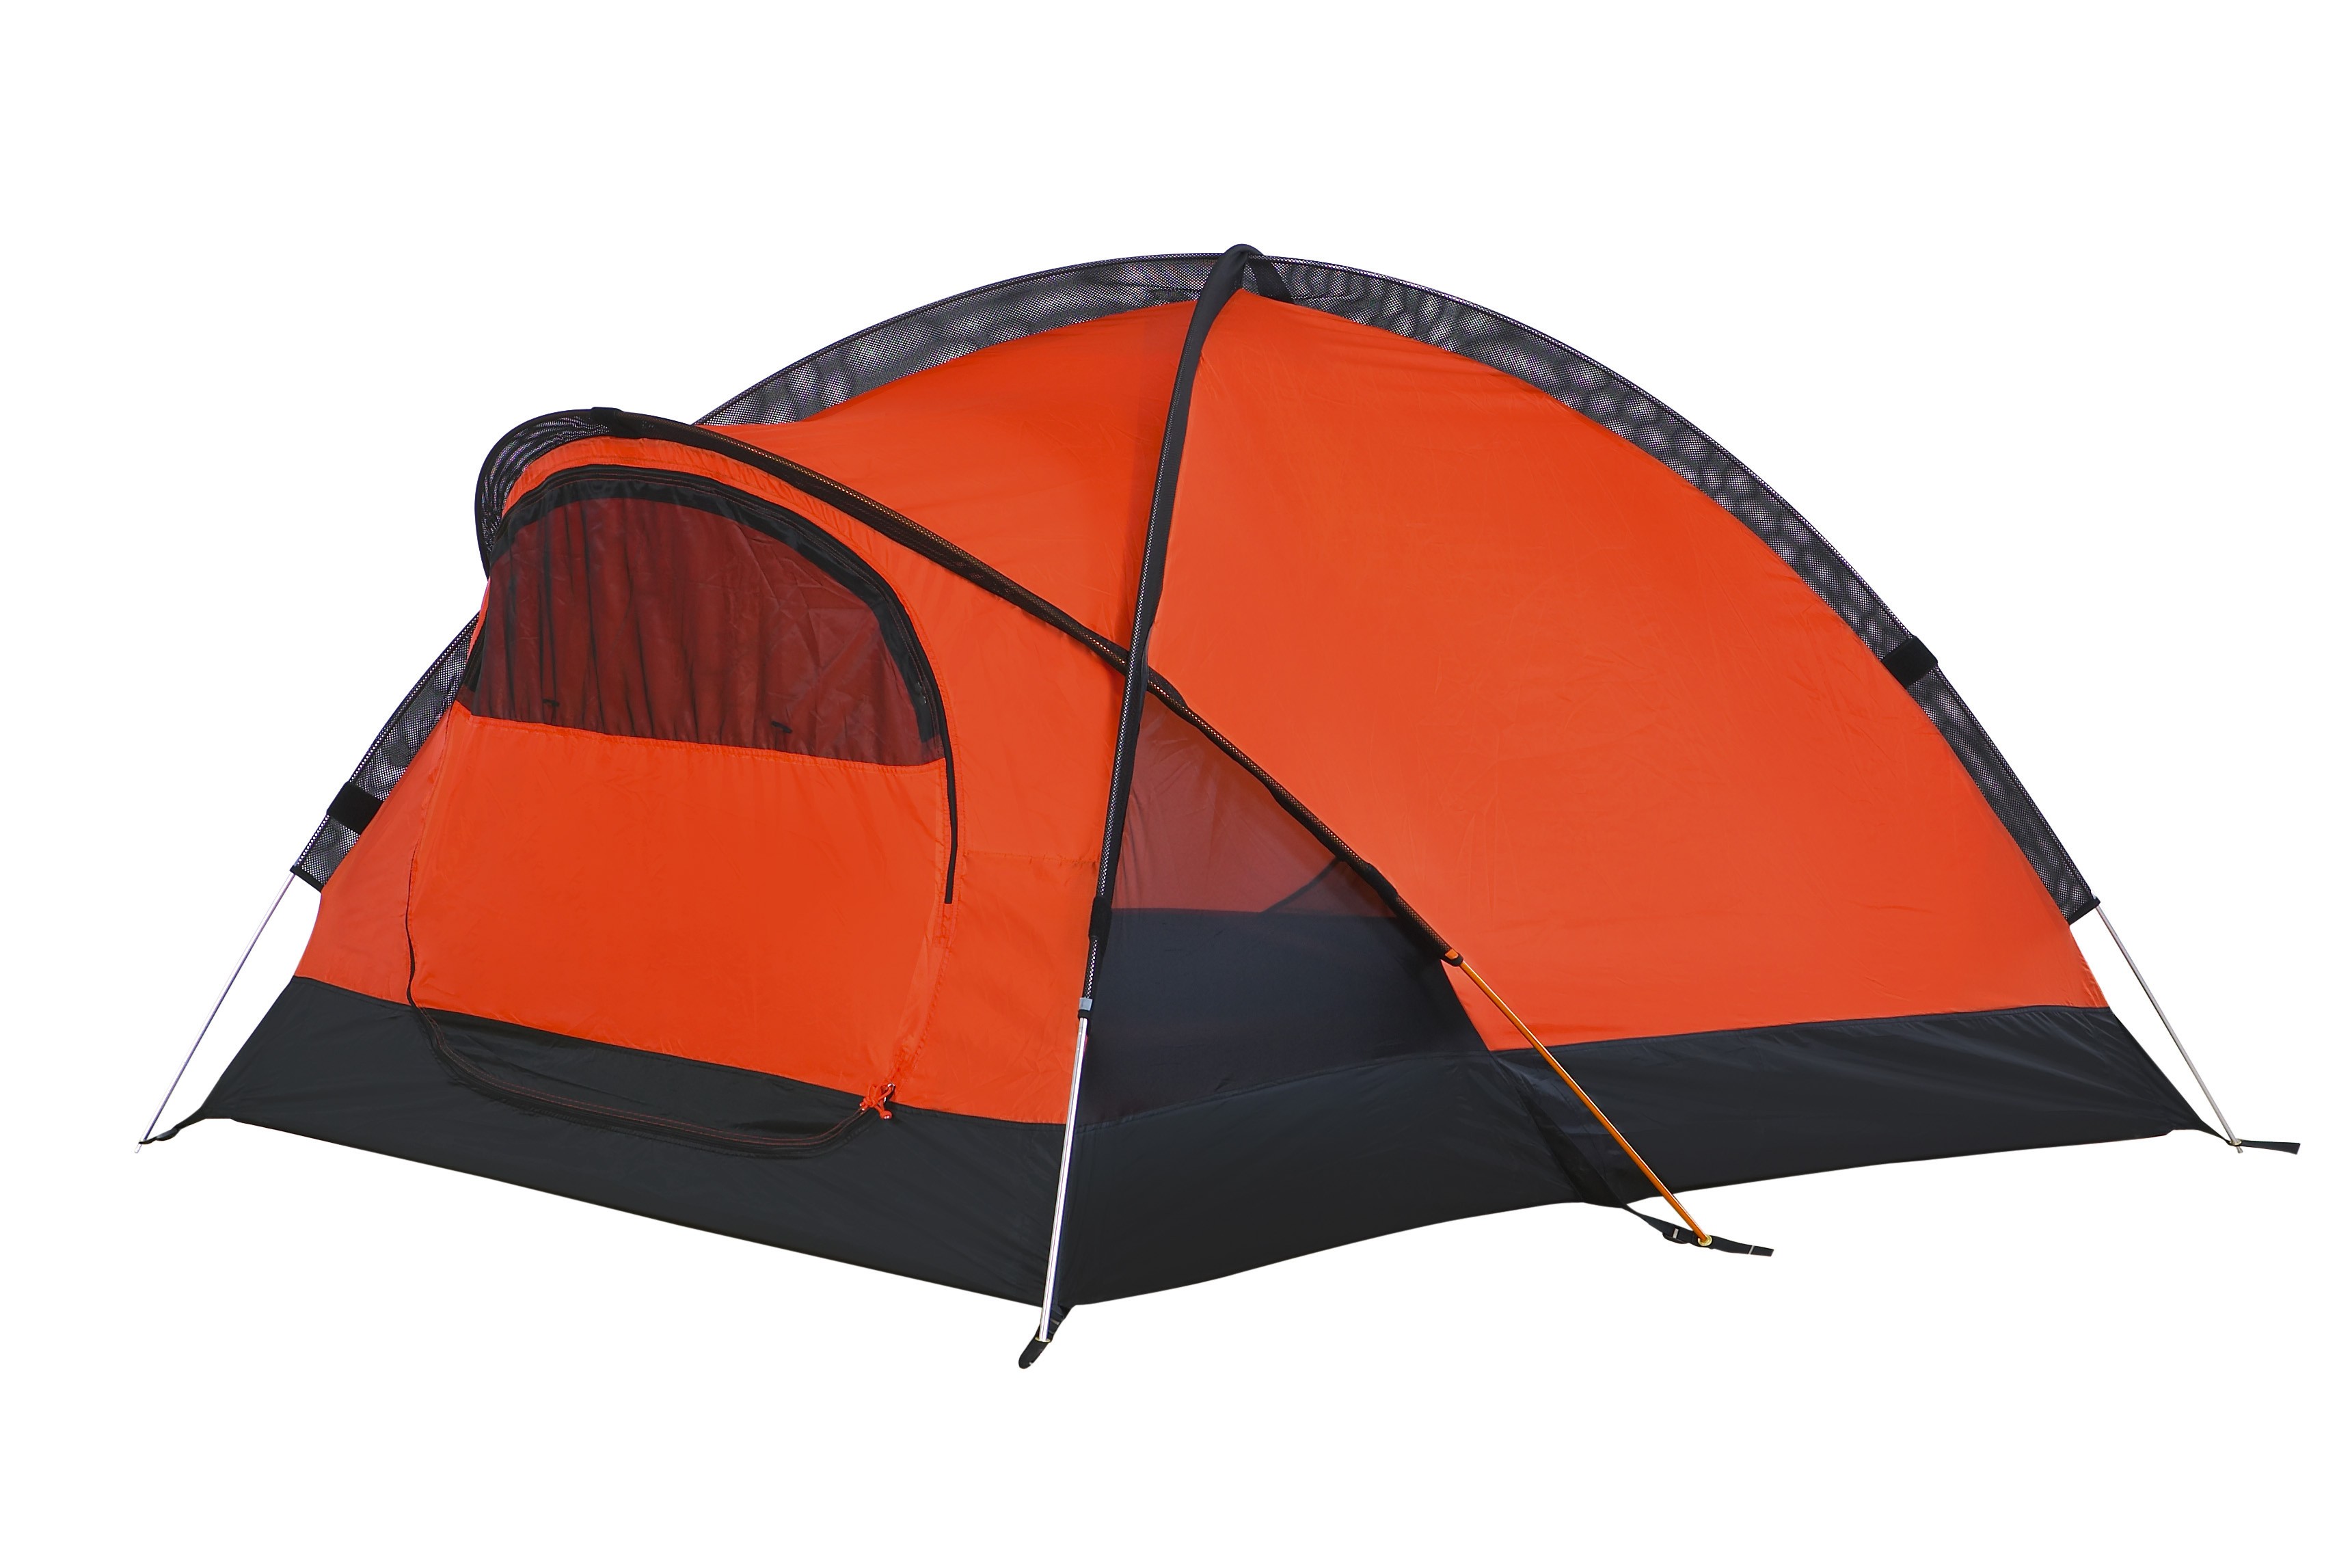 Jamet Keira 4000 Mountain Tent by Jamet for £150.00